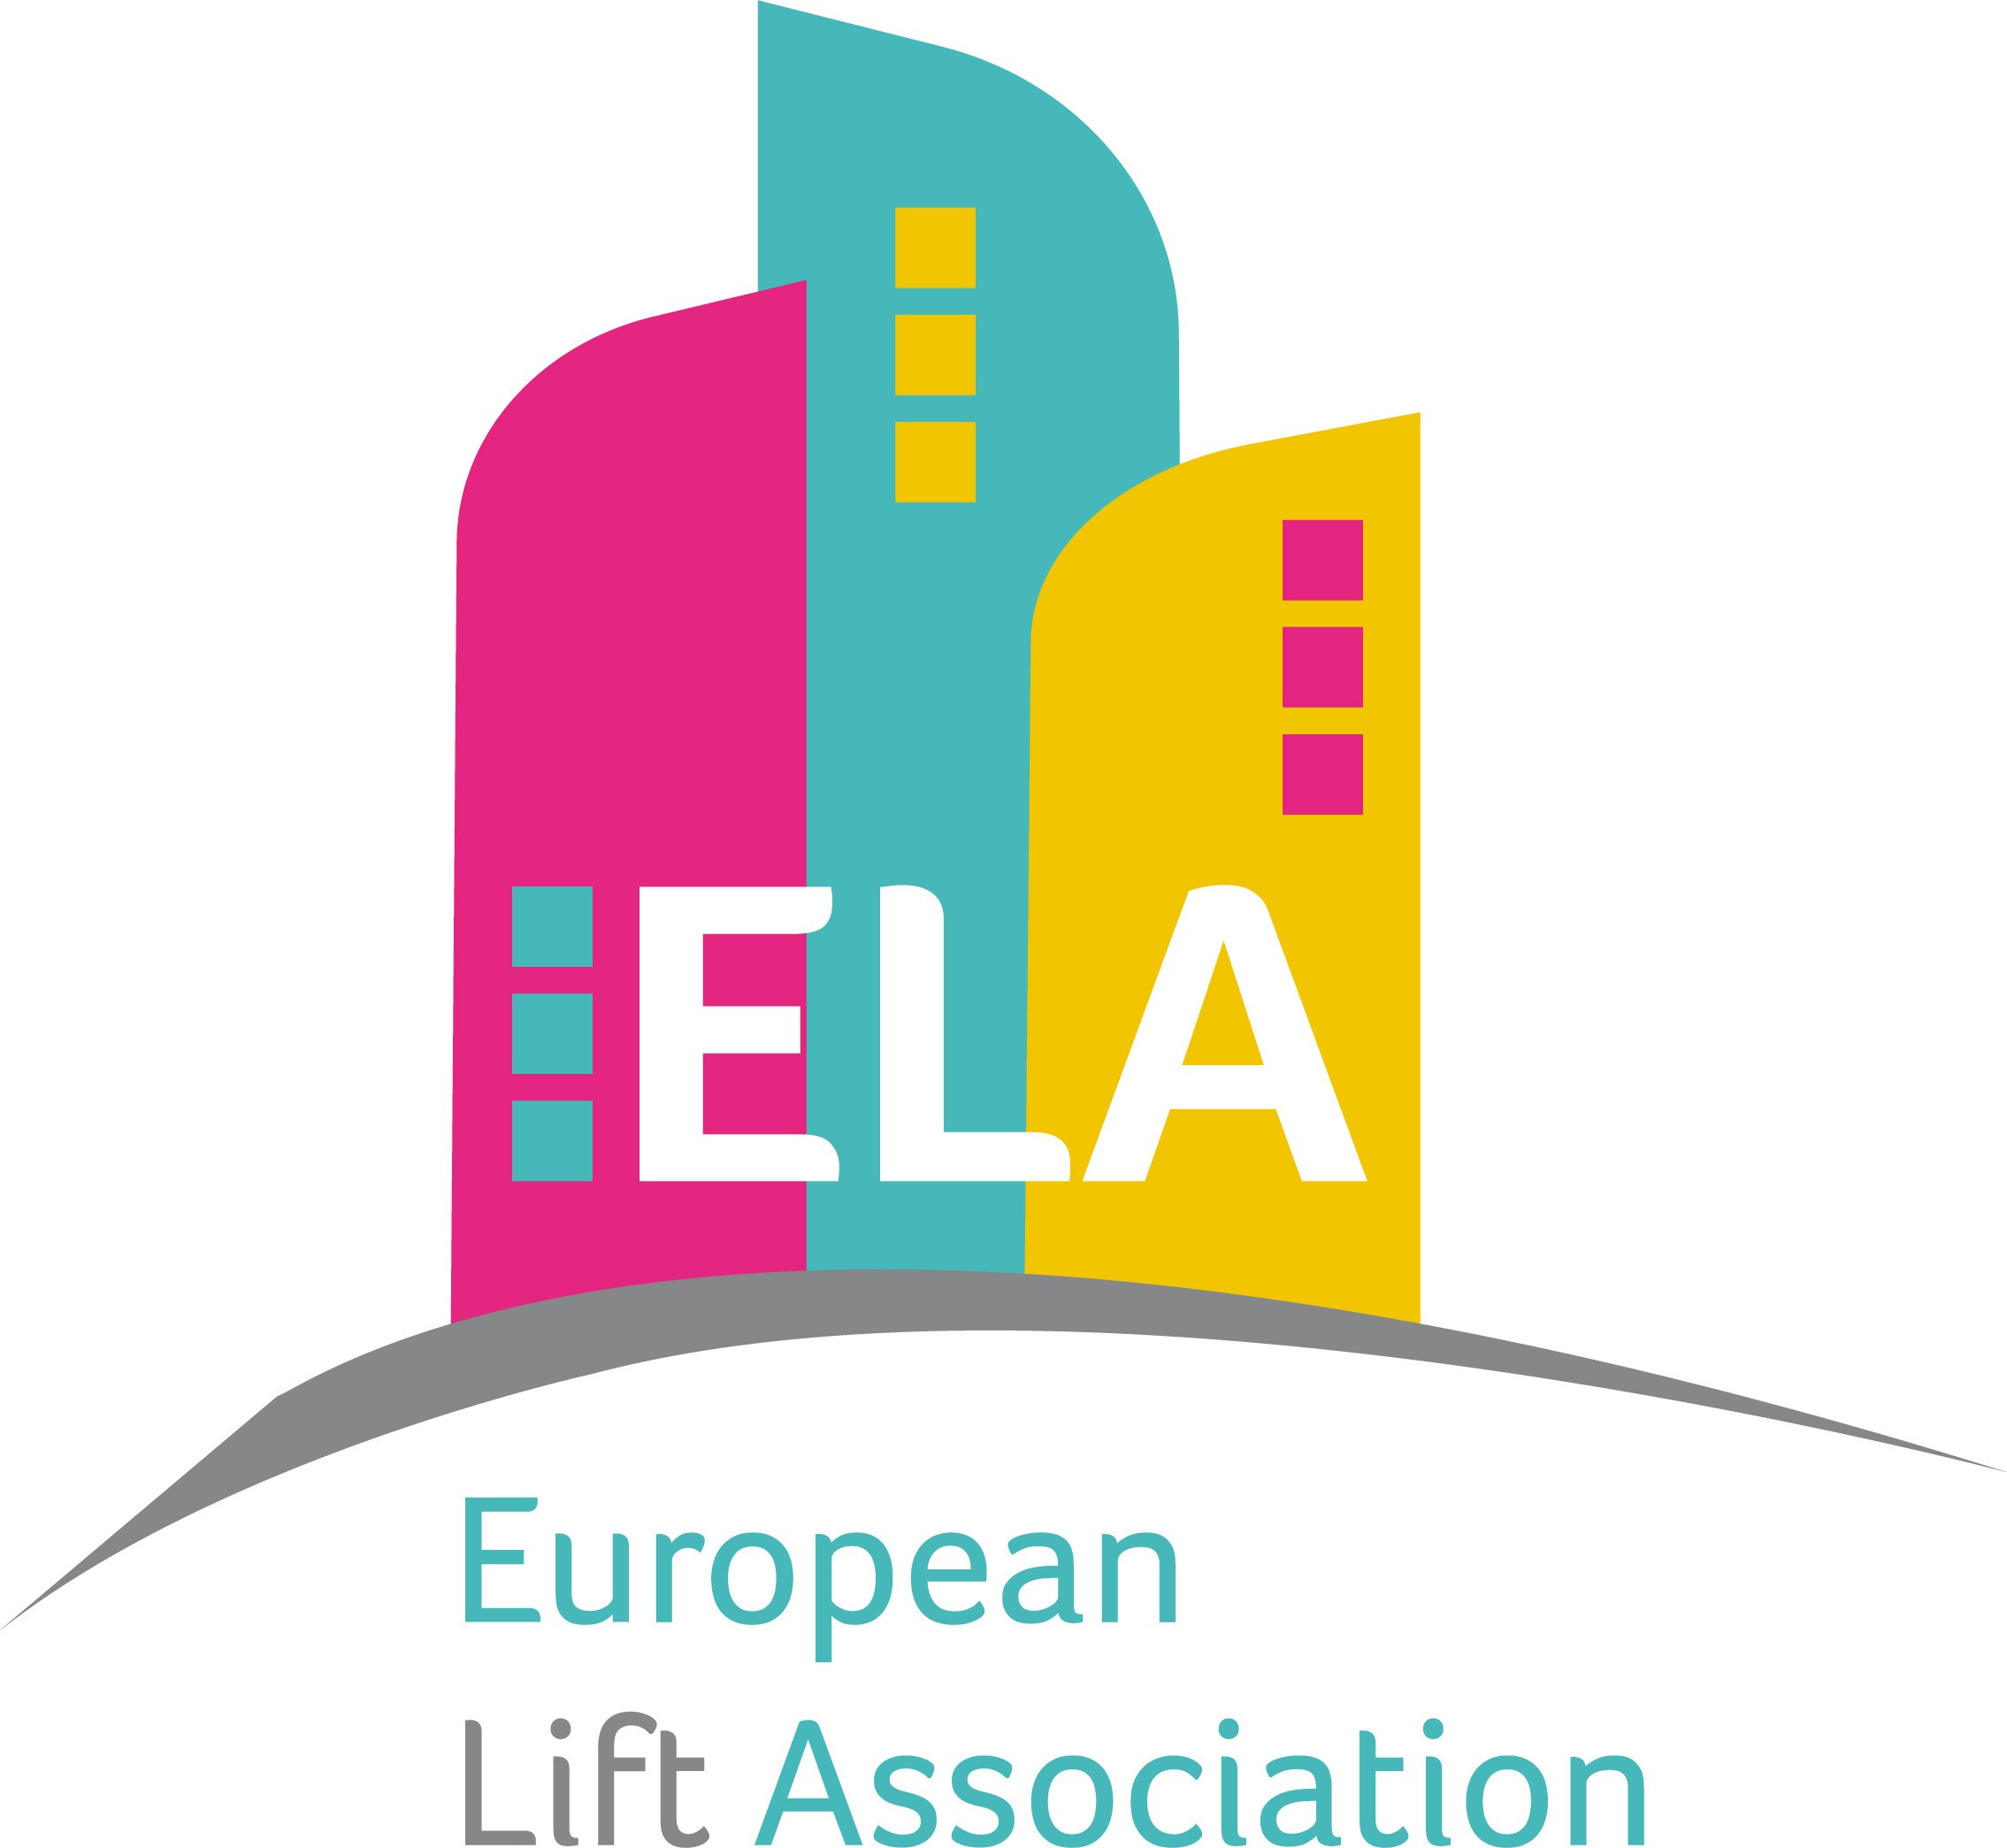 ELA-logo